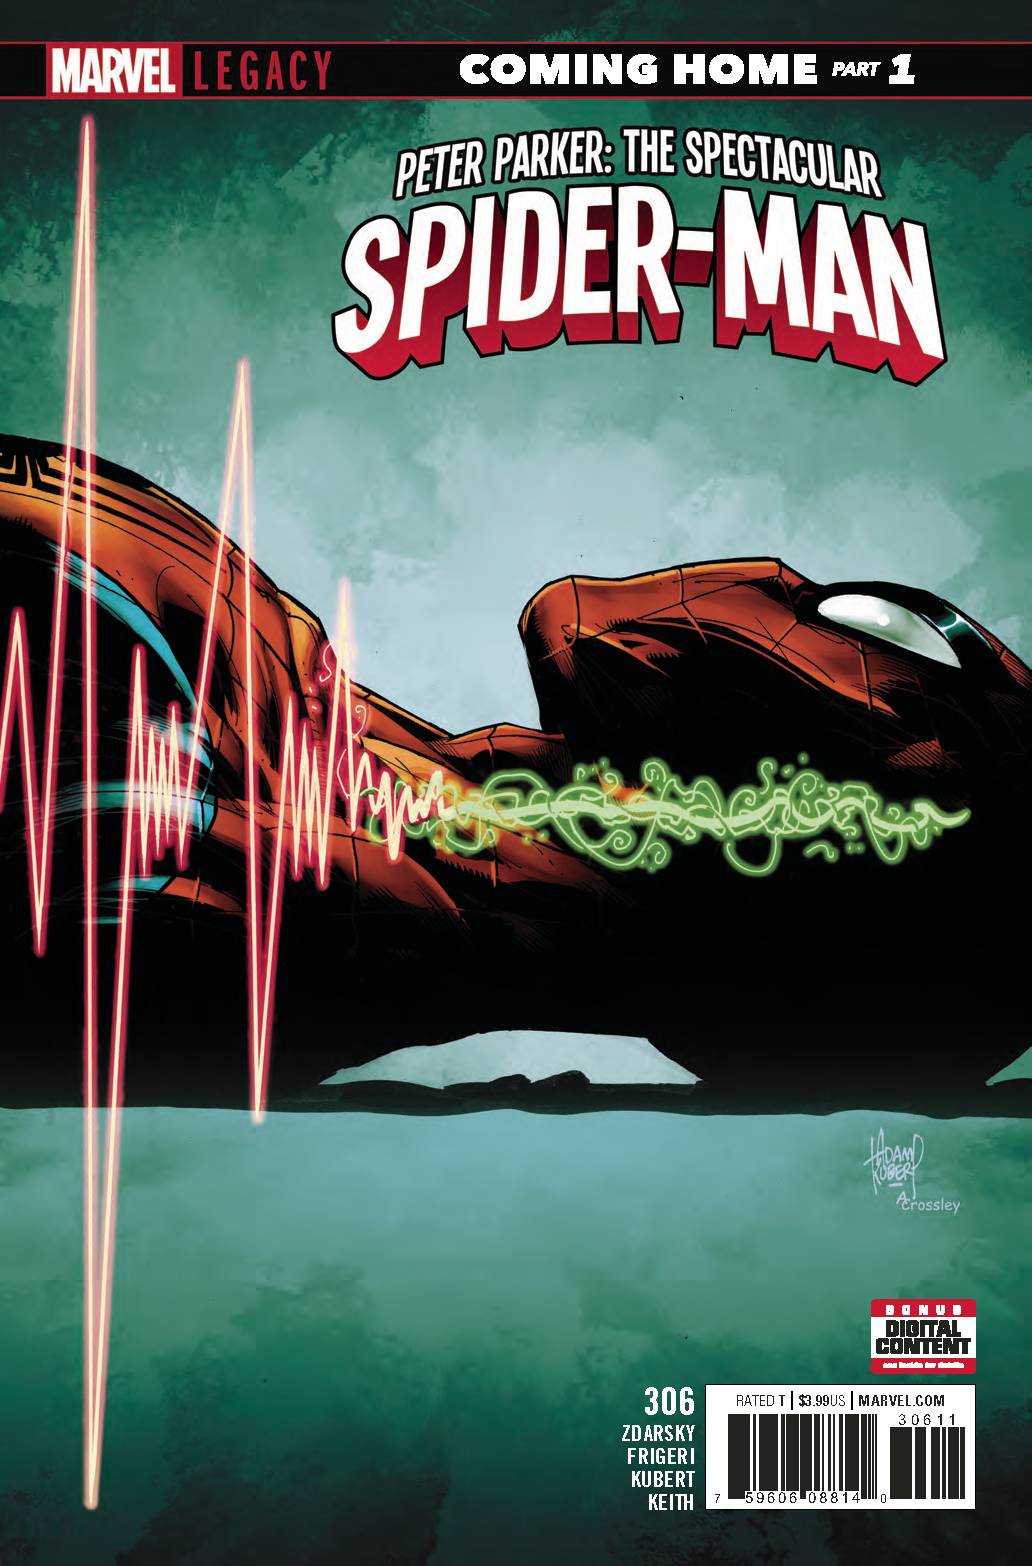 PETER PARKER SPECTACULAR SPIDER-MAN #306 (06/27/2018)